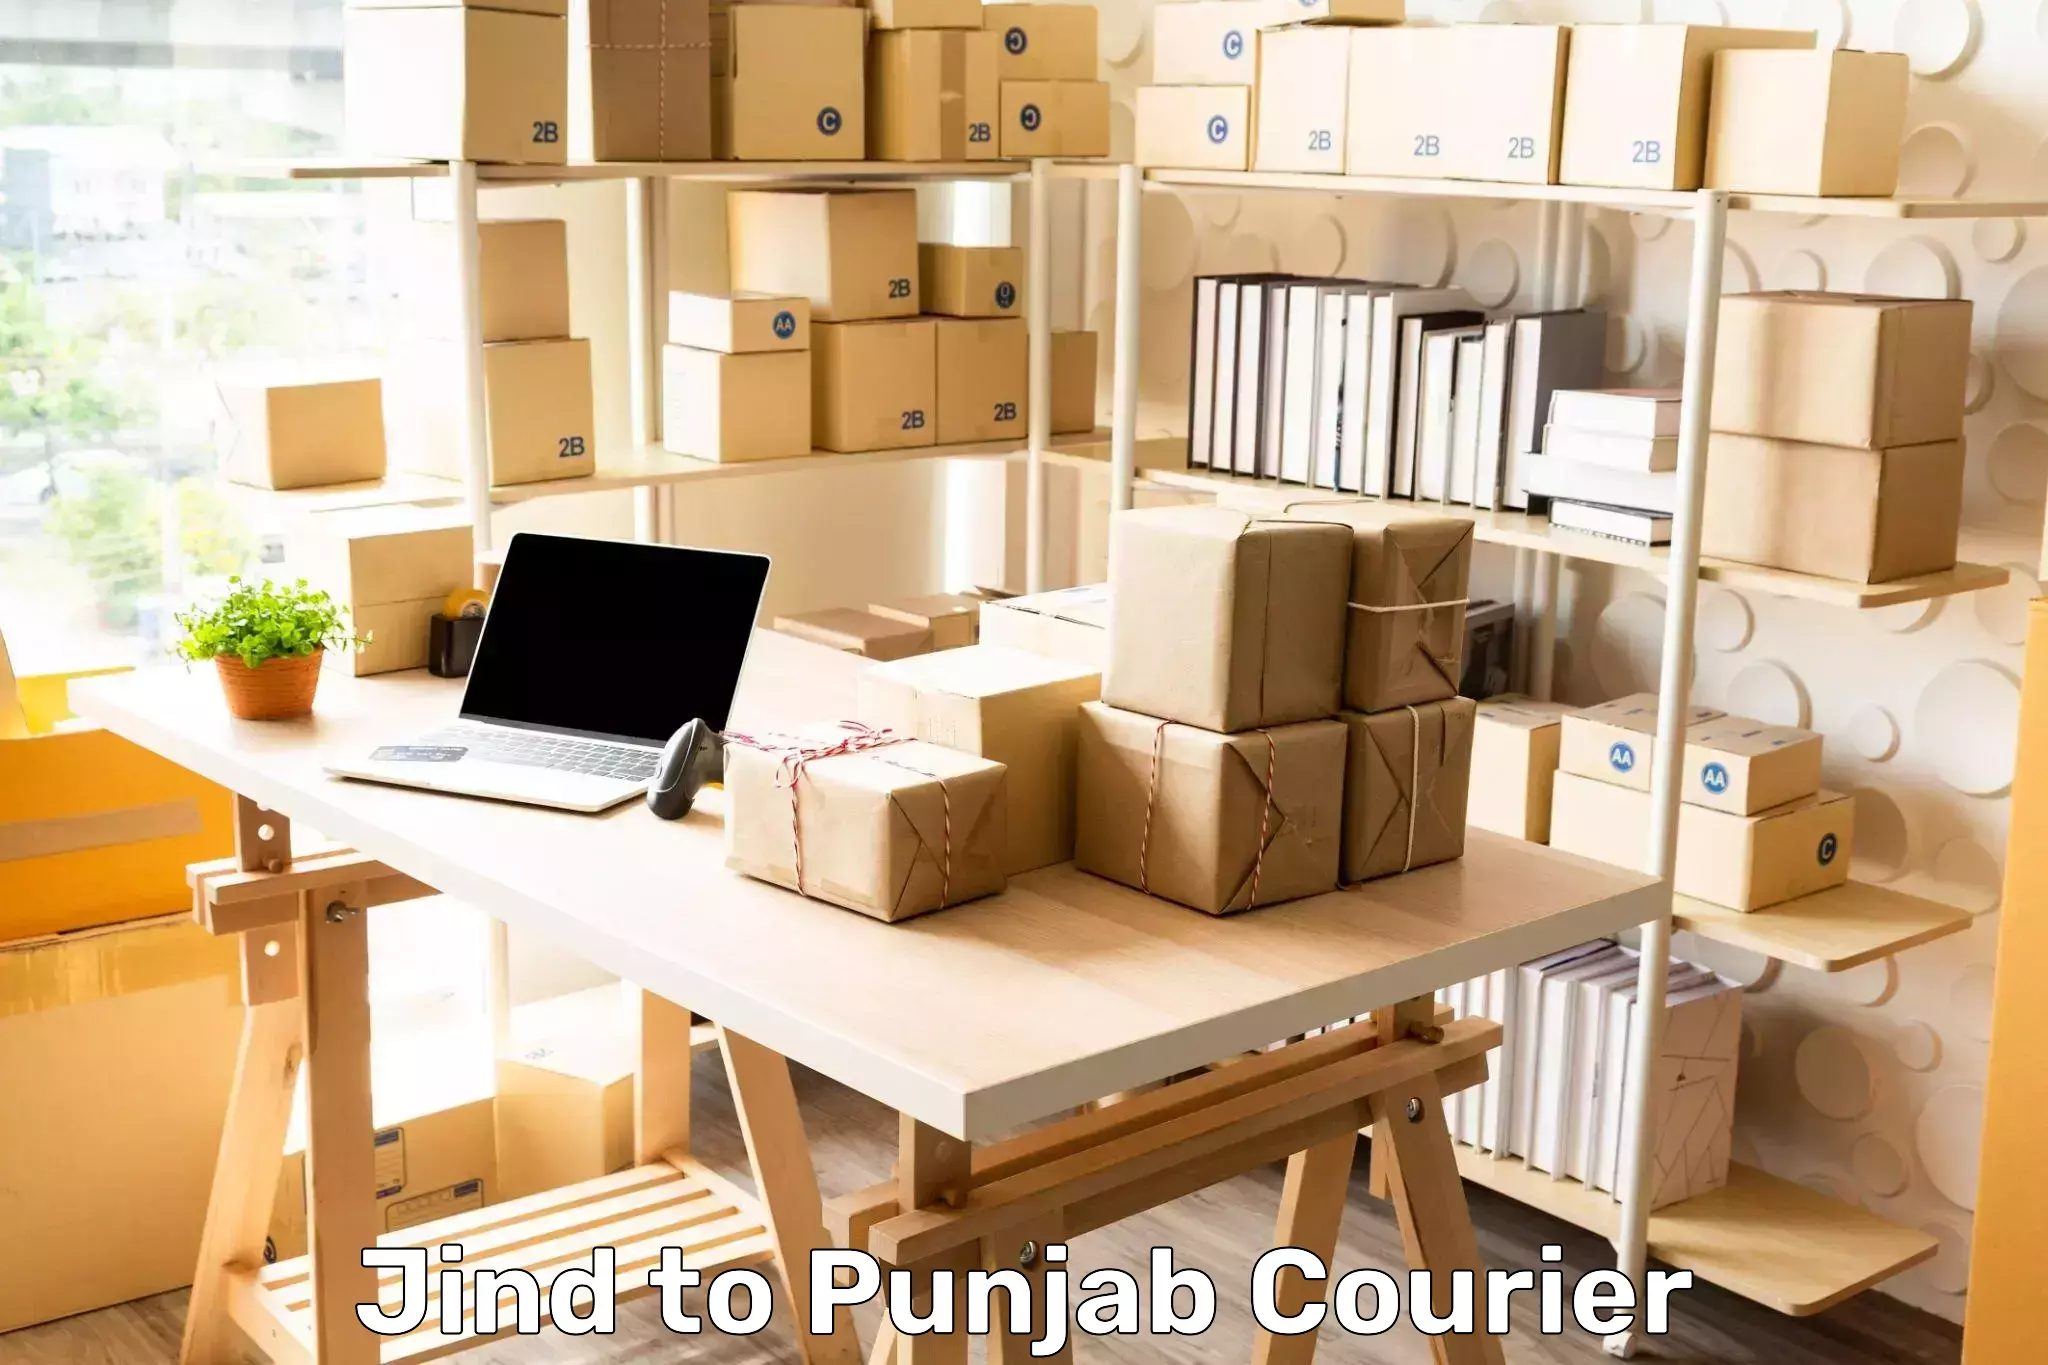 International shipping rates Jind to Punjab